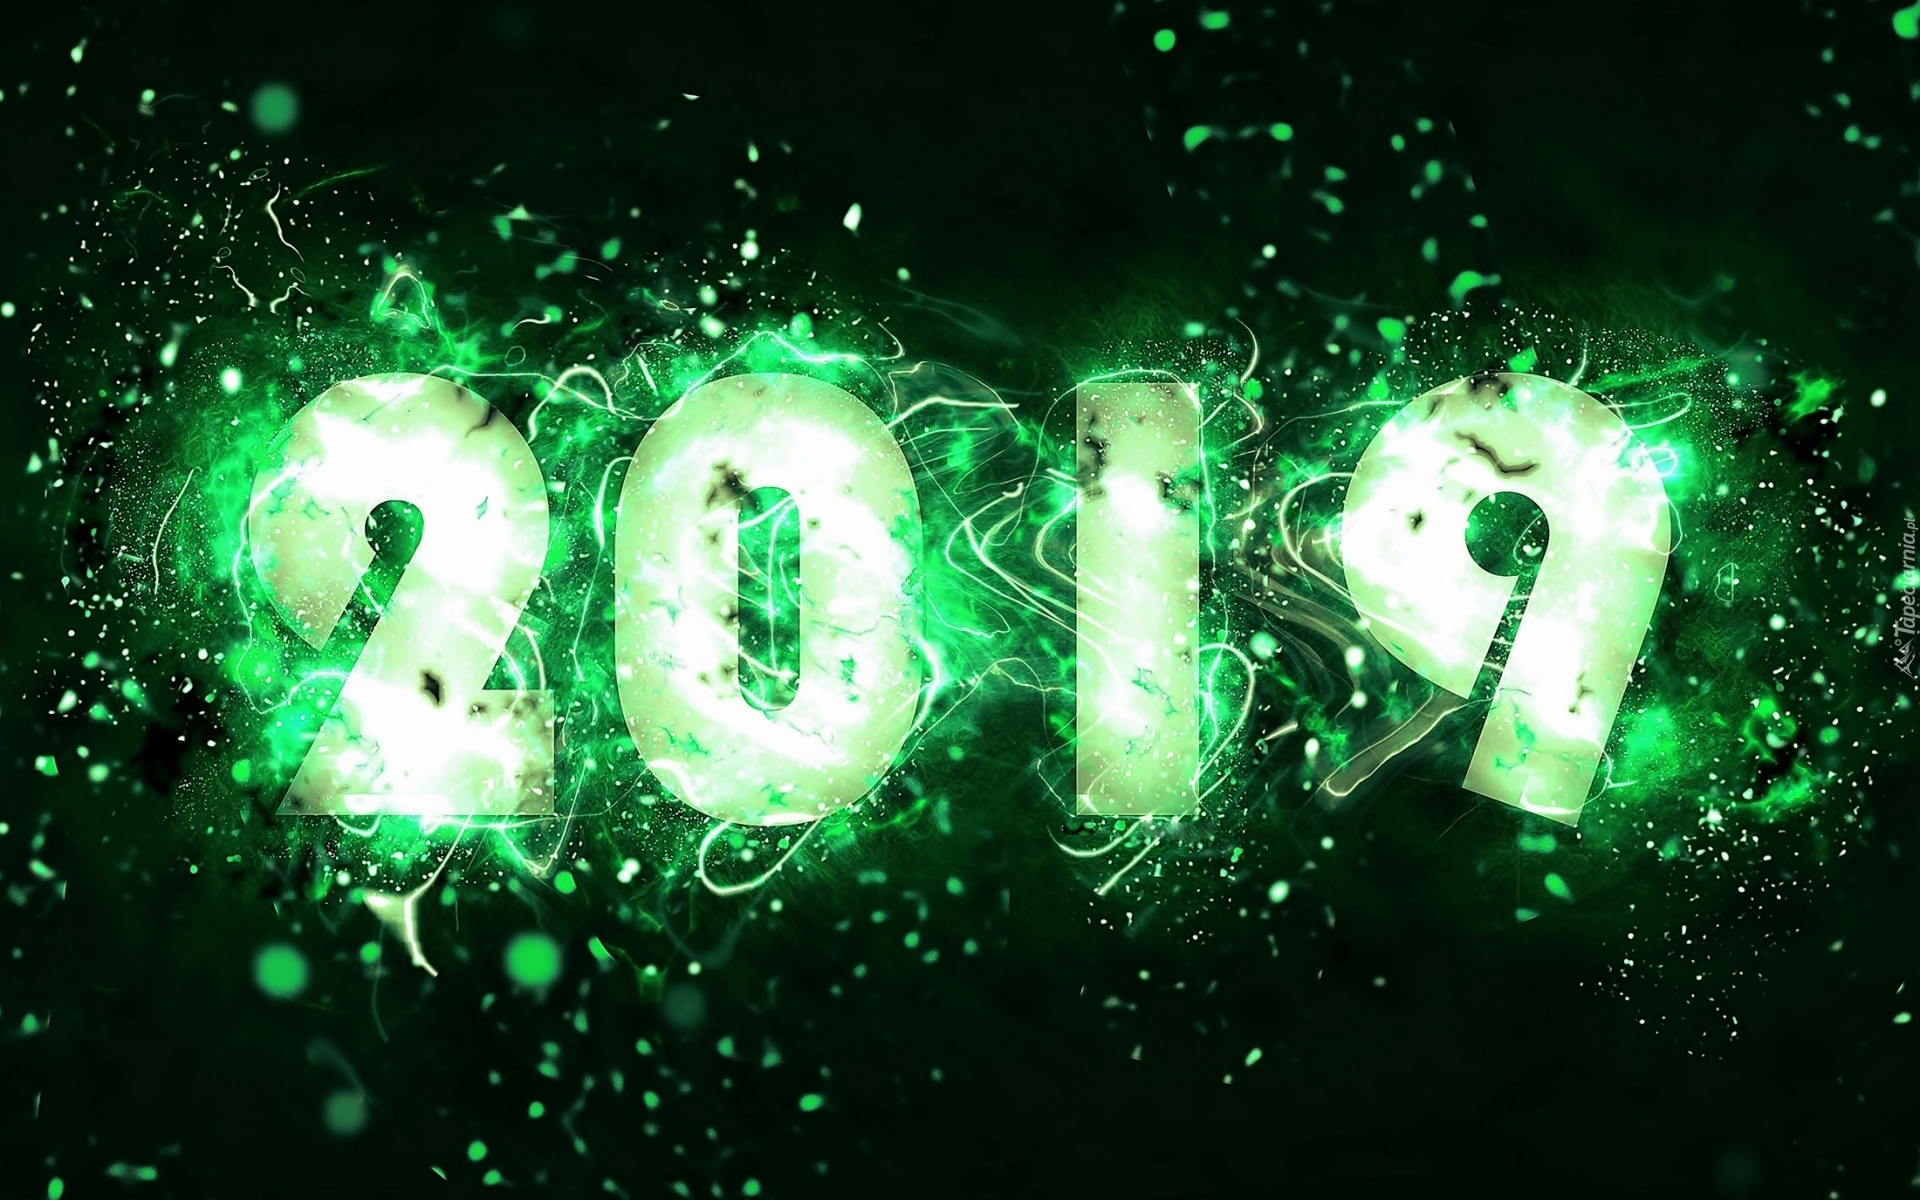 Nowy Rok, 2019, Zielone, Cyfry